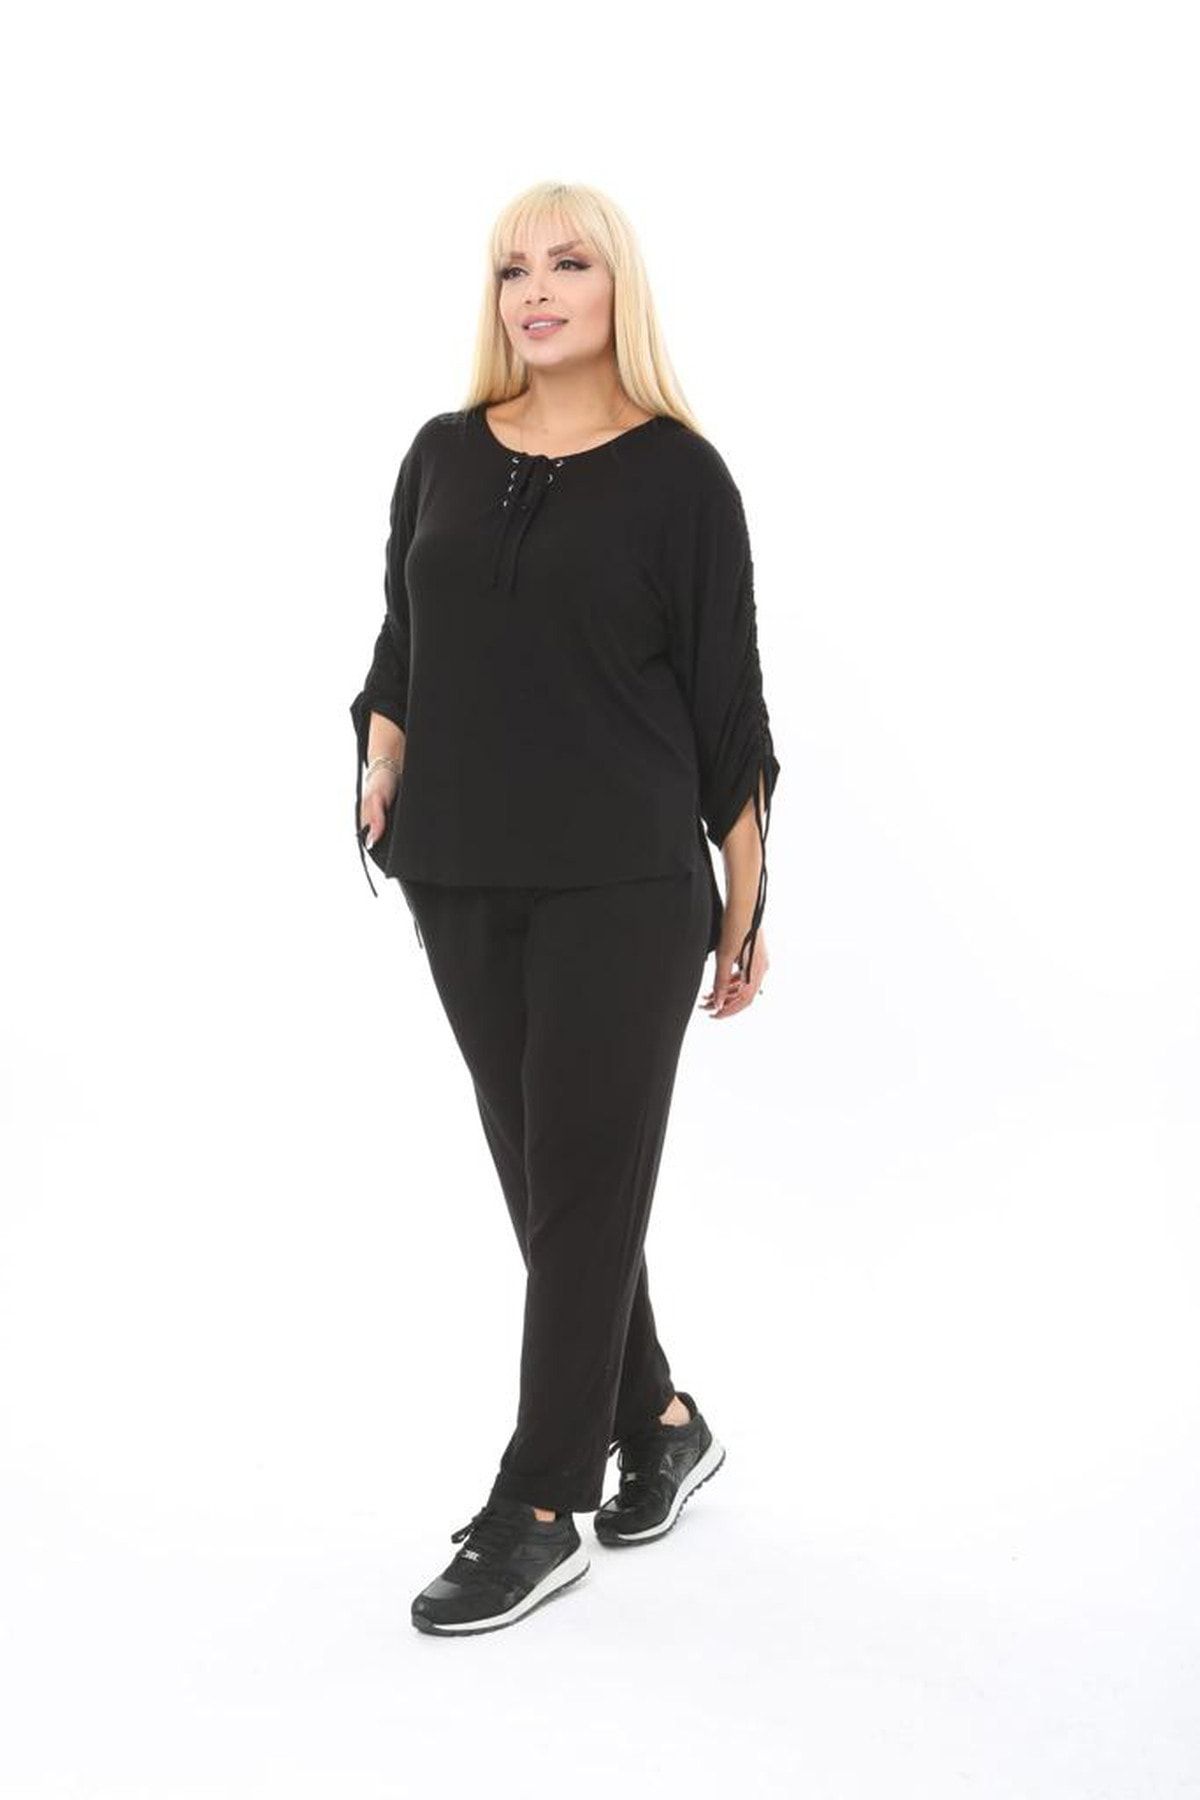 xlargebutik Plus Size Women's Clothing Flexible Comfortable Fit Stylish Suit  Black